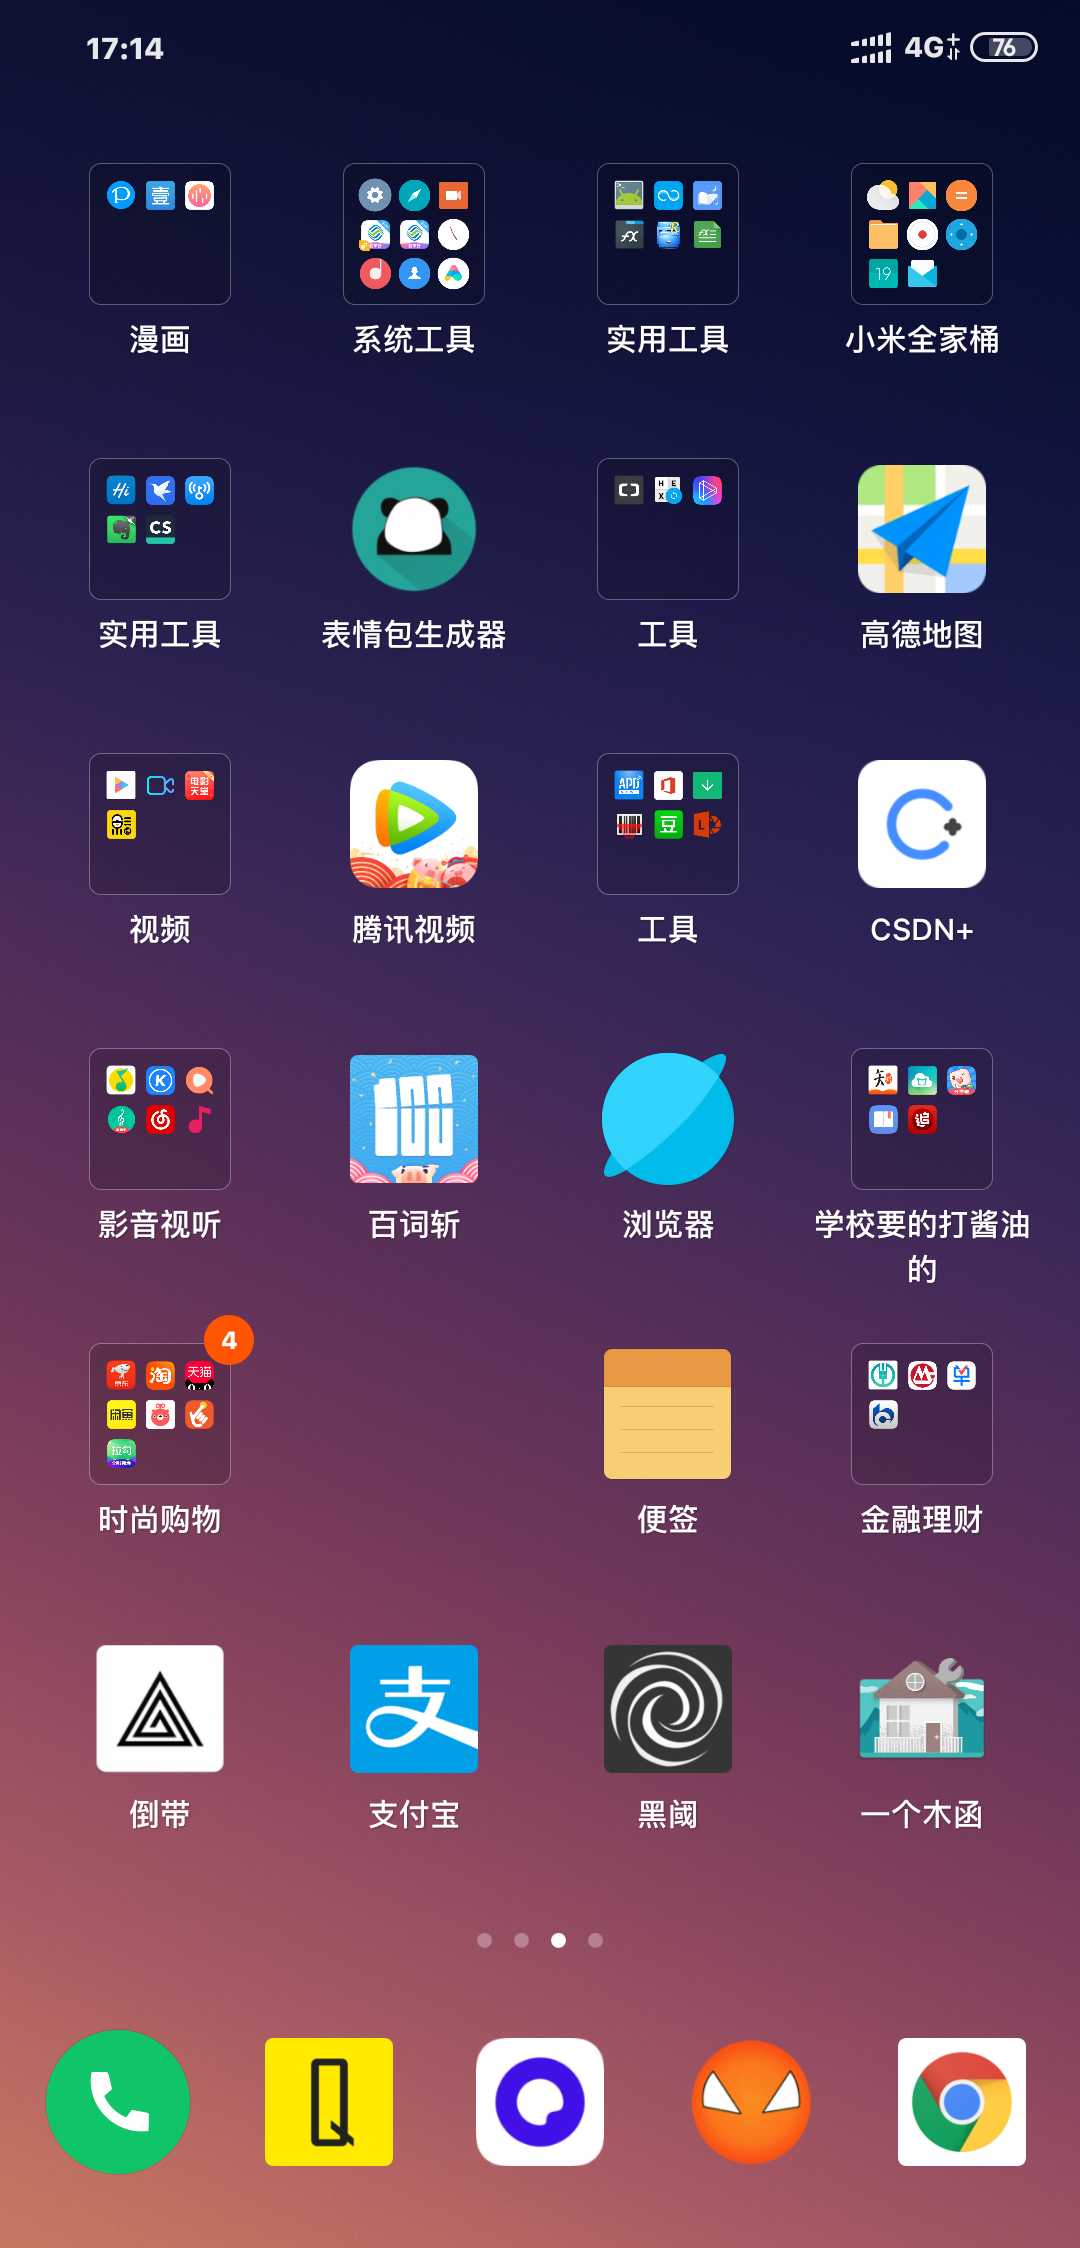 实用的图片浏览器：XnViewMP for Mac中文版 - 哔哩哔哩